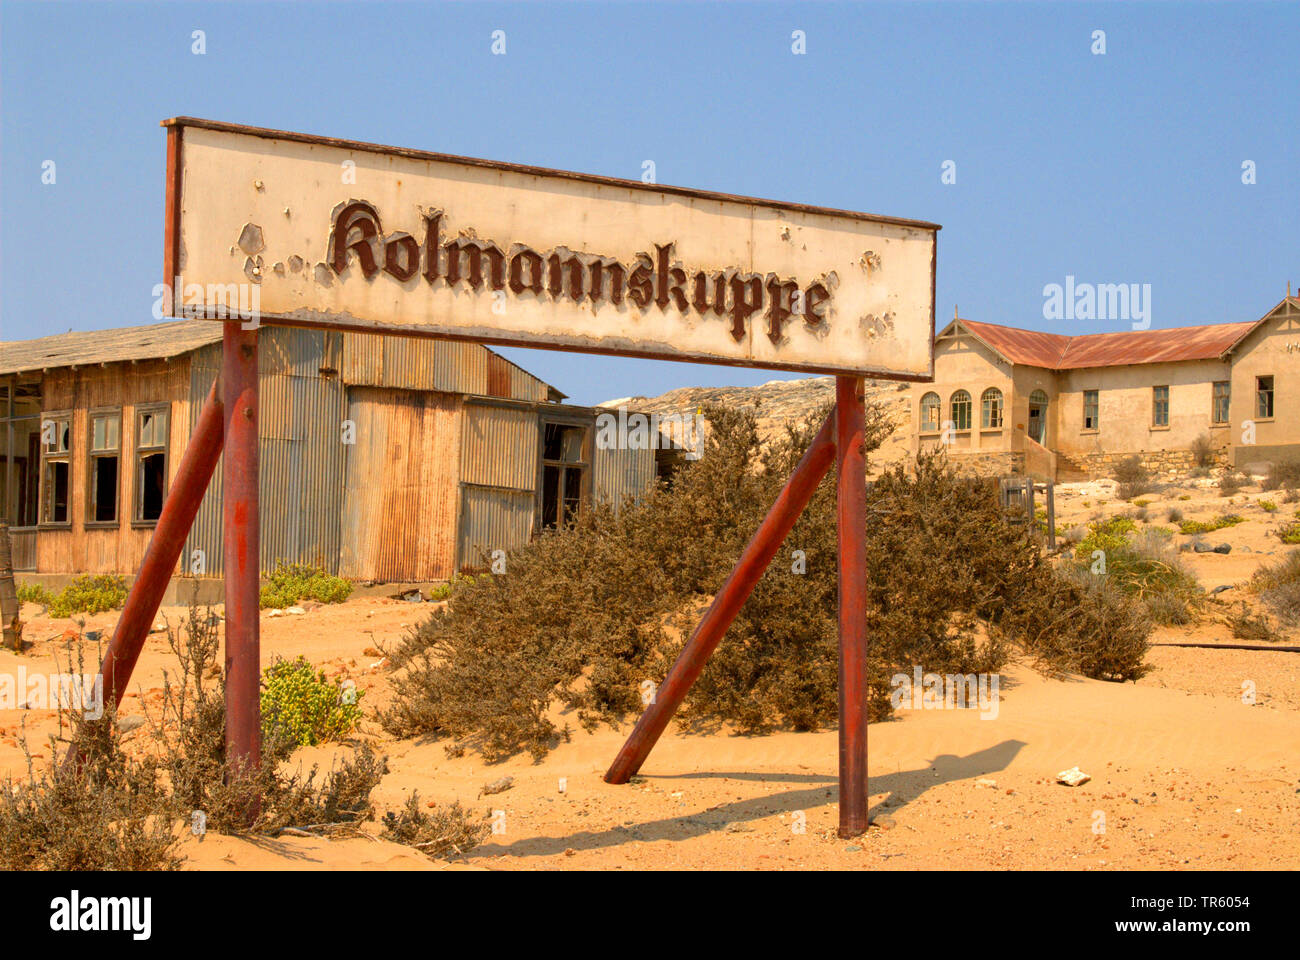 ghost town Kolmannskuppe, Namibia, Kolmannskuppe Stock Photo